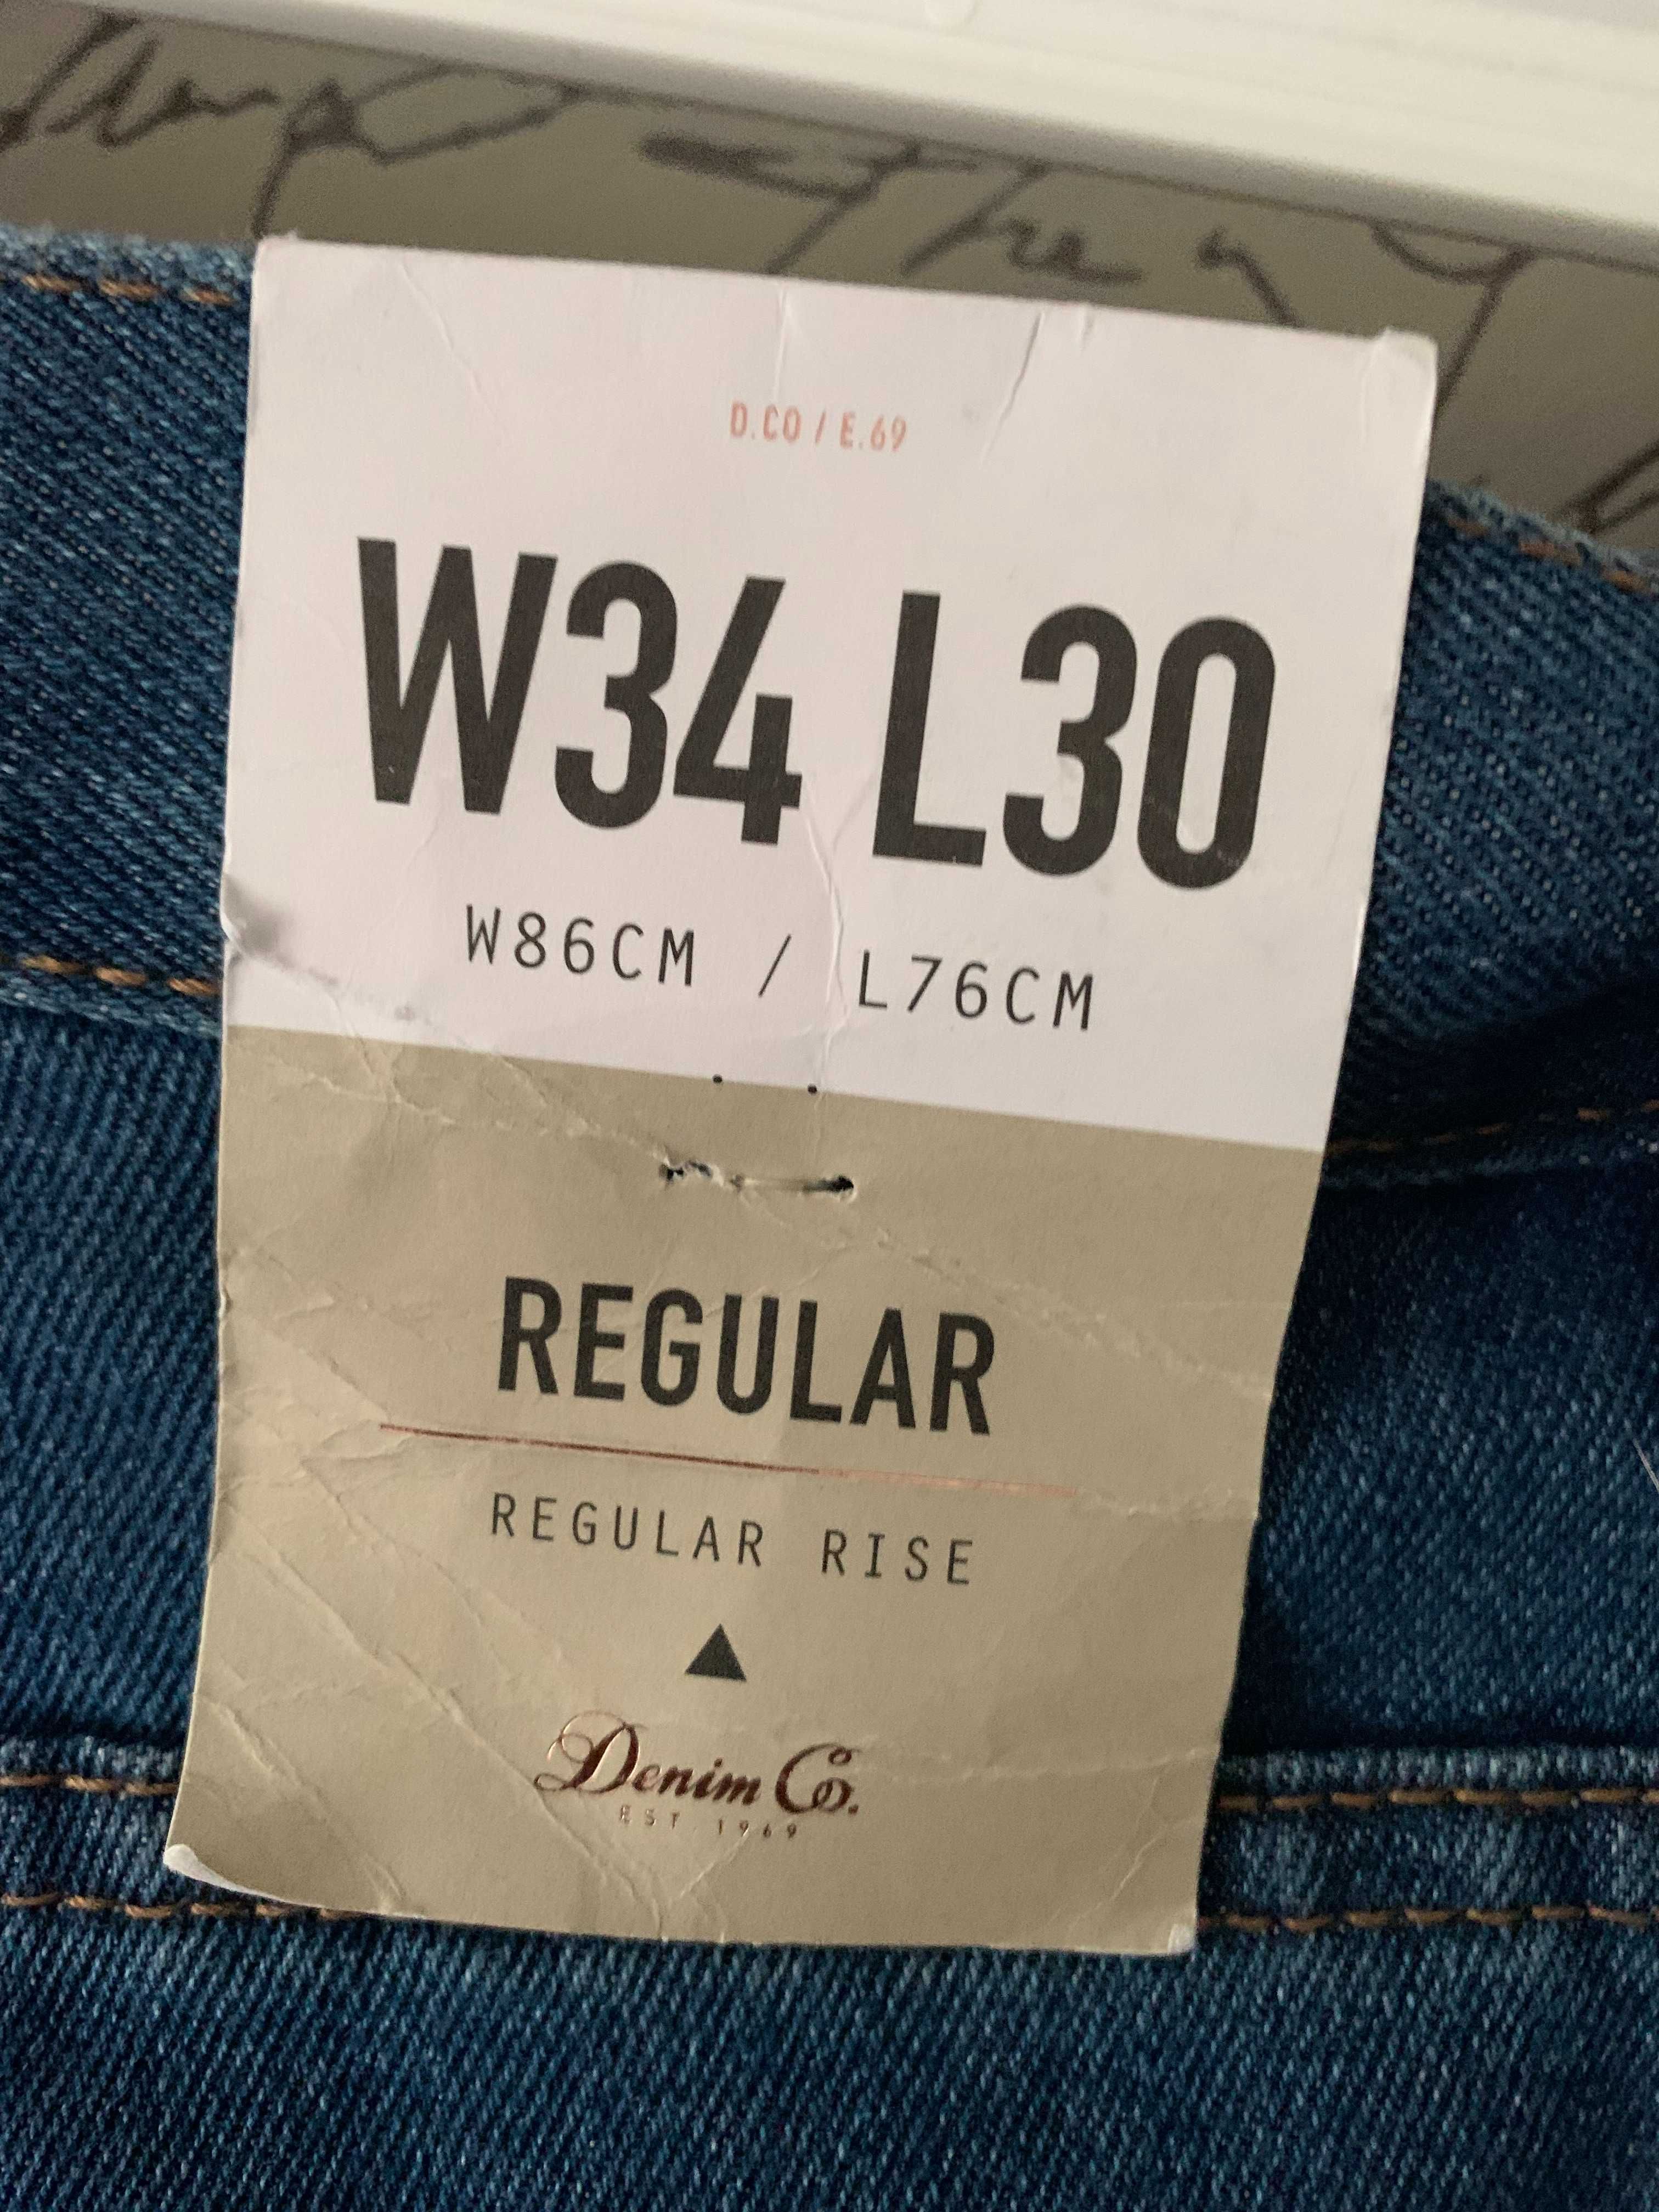 Primark super nowe spodnie jeansowe 34/30